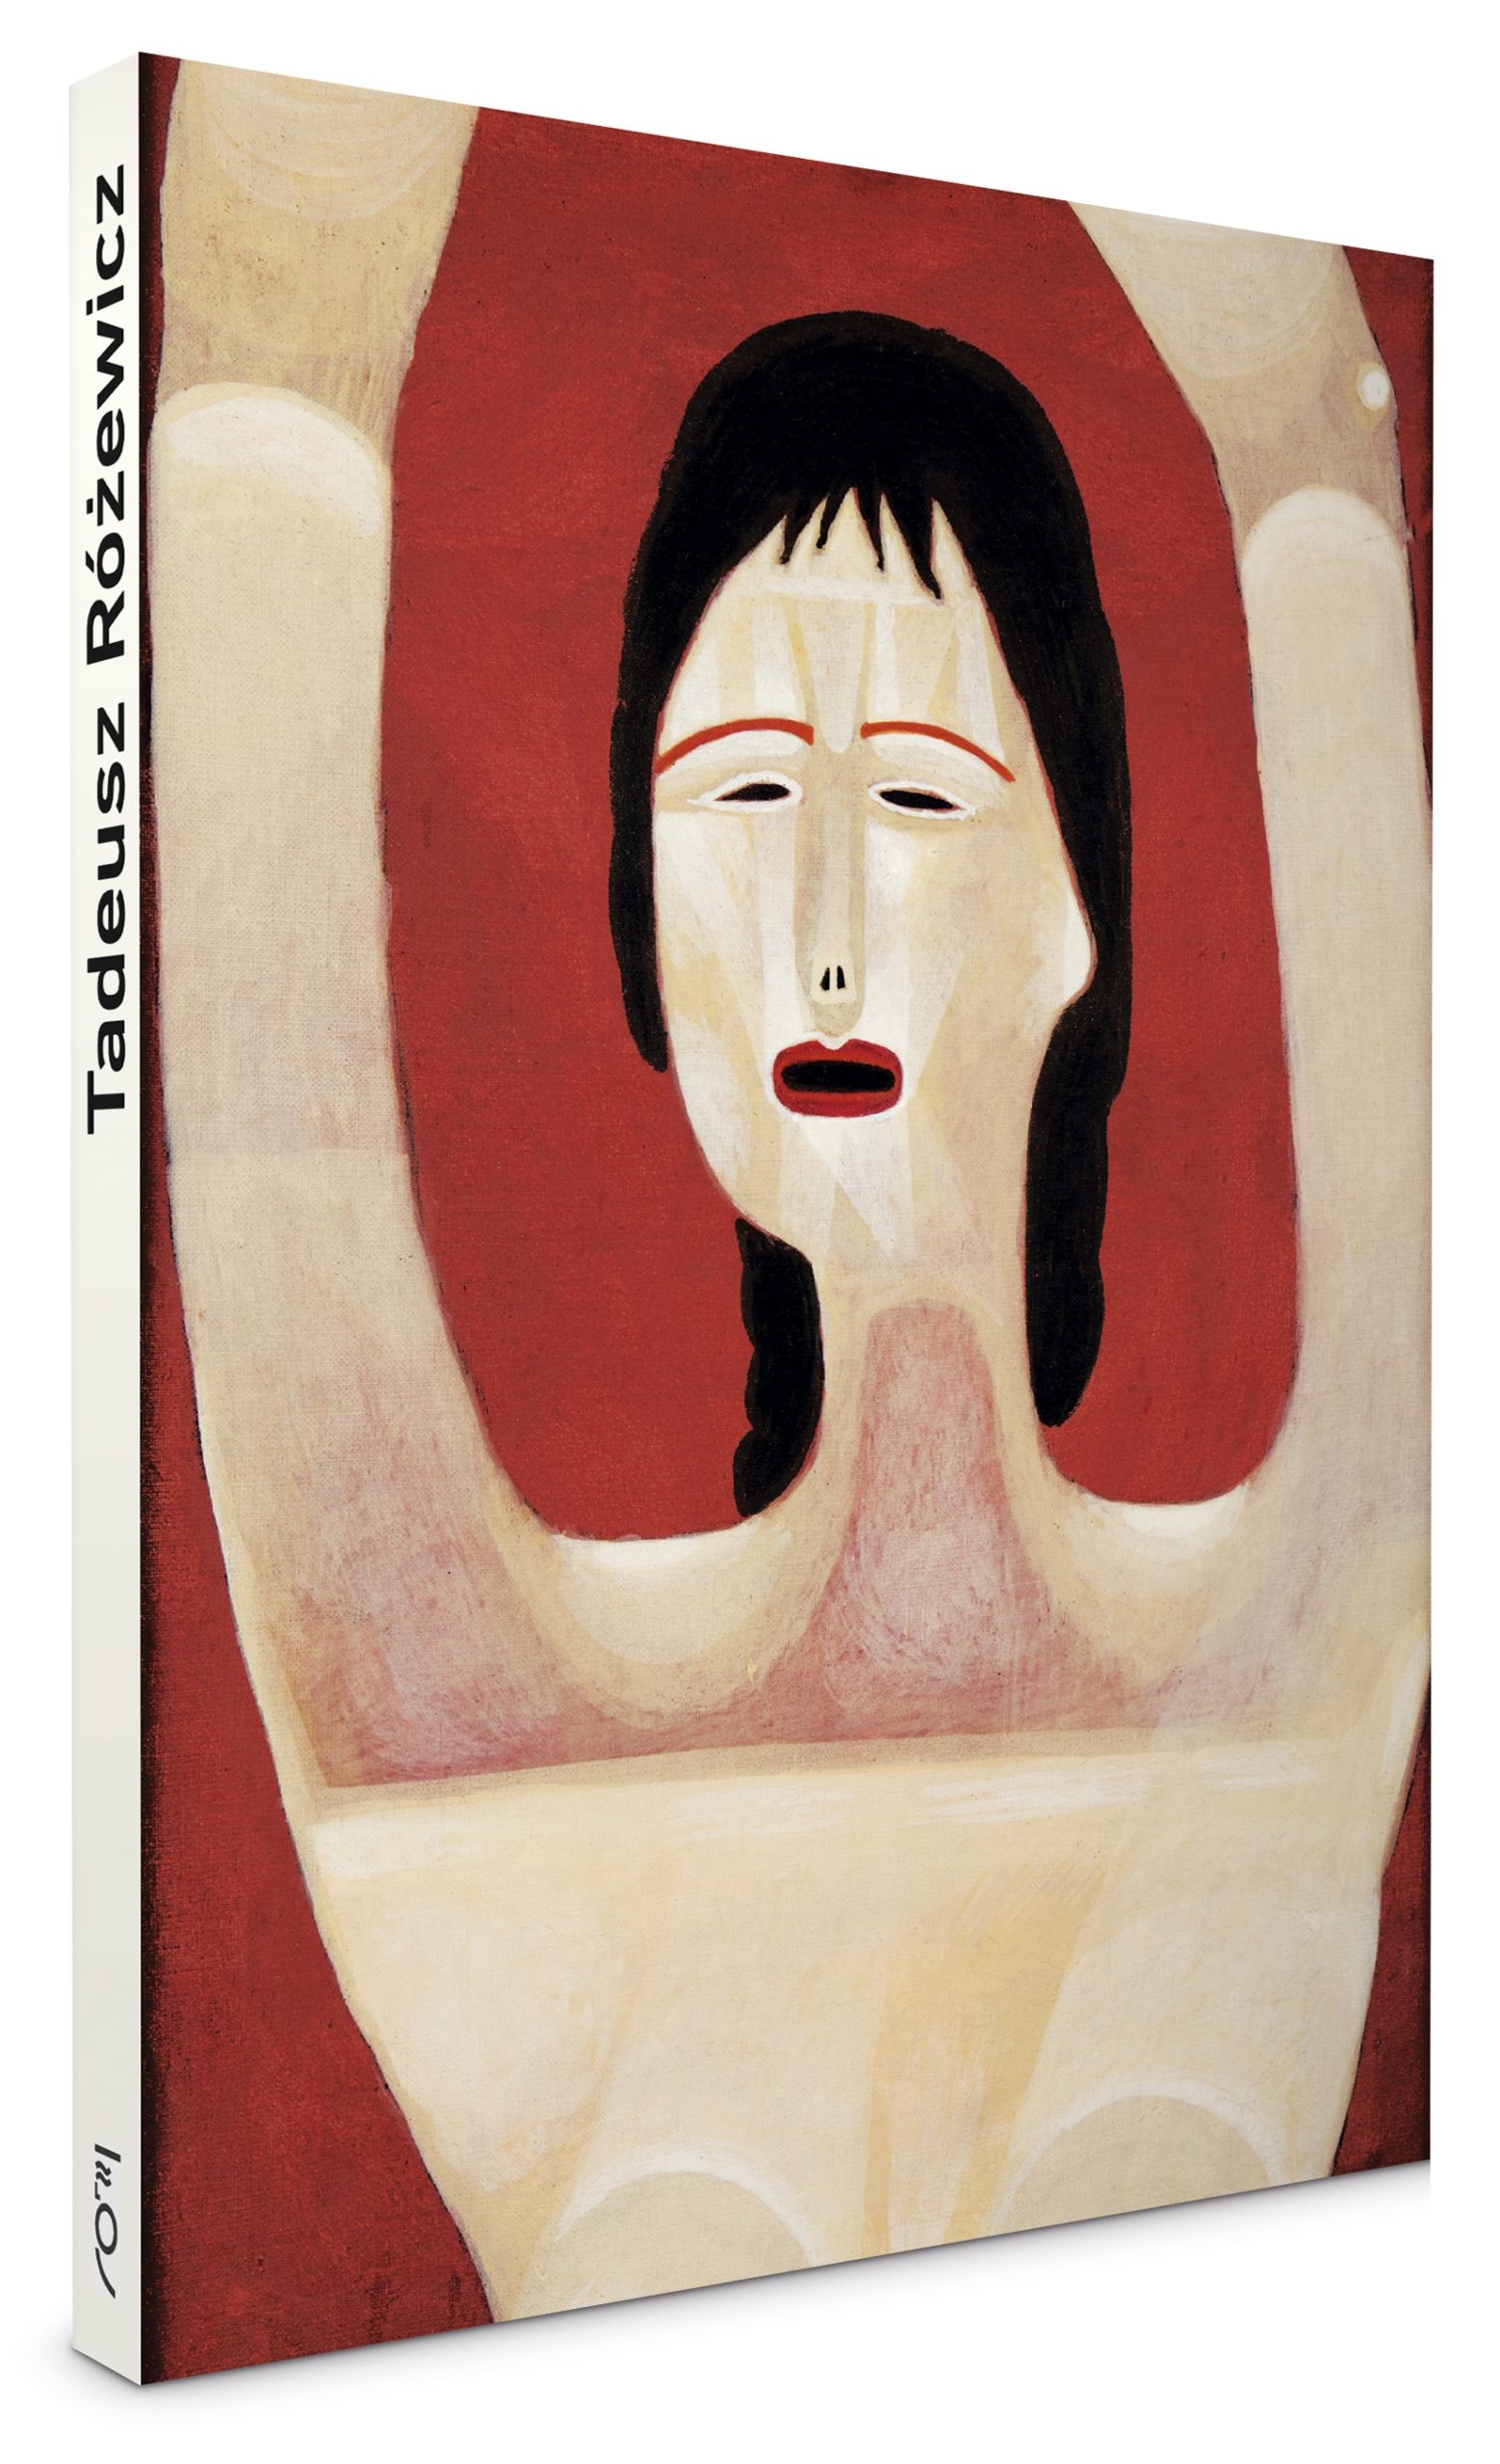 okładka tomiku poezji różewicza. Na czerwonym tle namalowana kobieta. na grzbiecie książki napis Tadeusz Różewicz